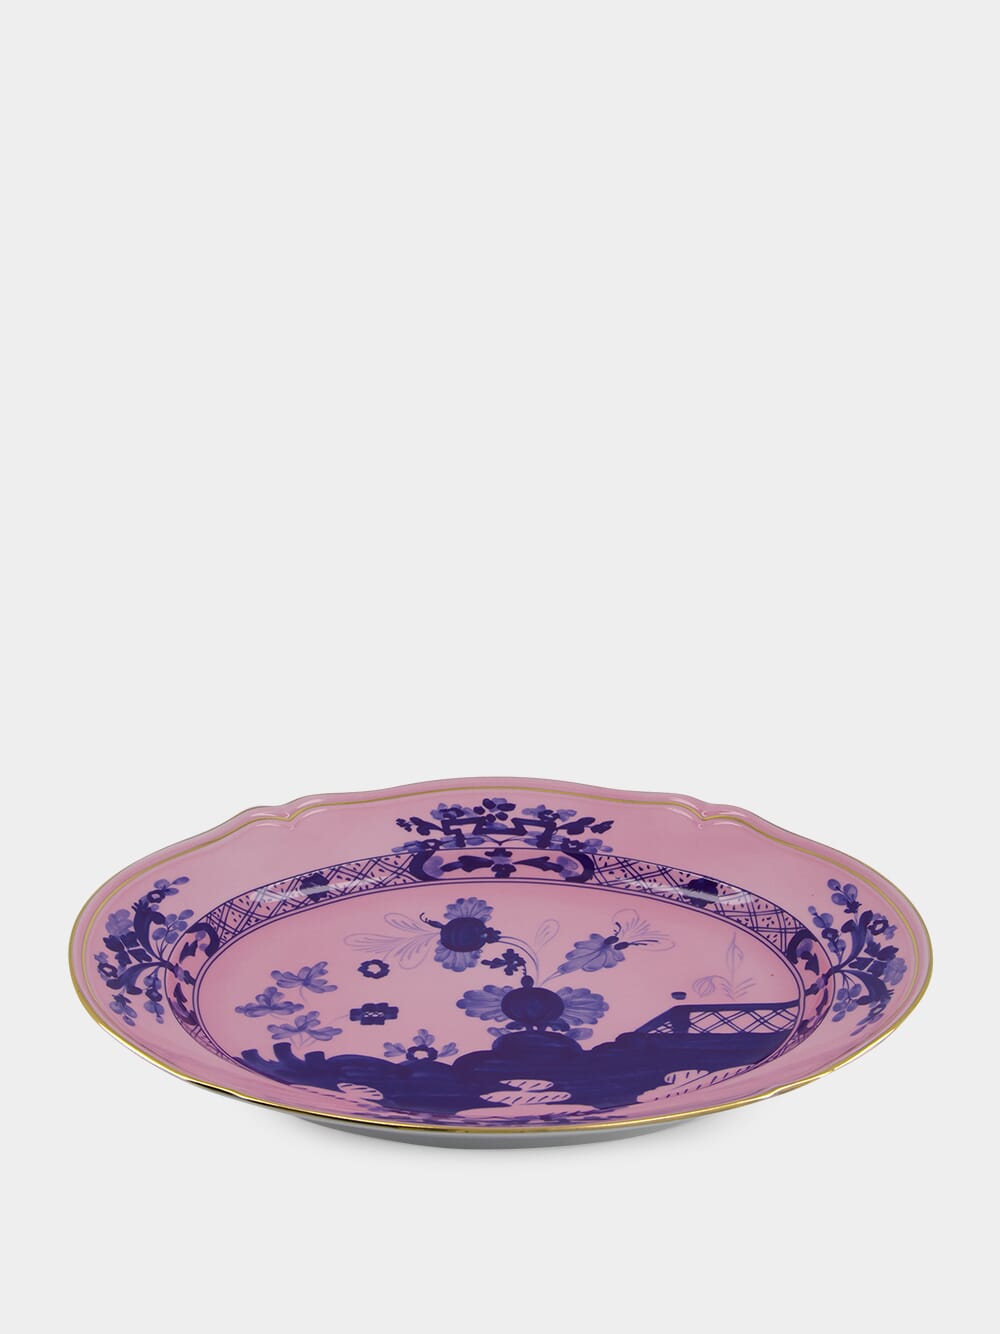 Oriente Italiano Azalea Oval Platter